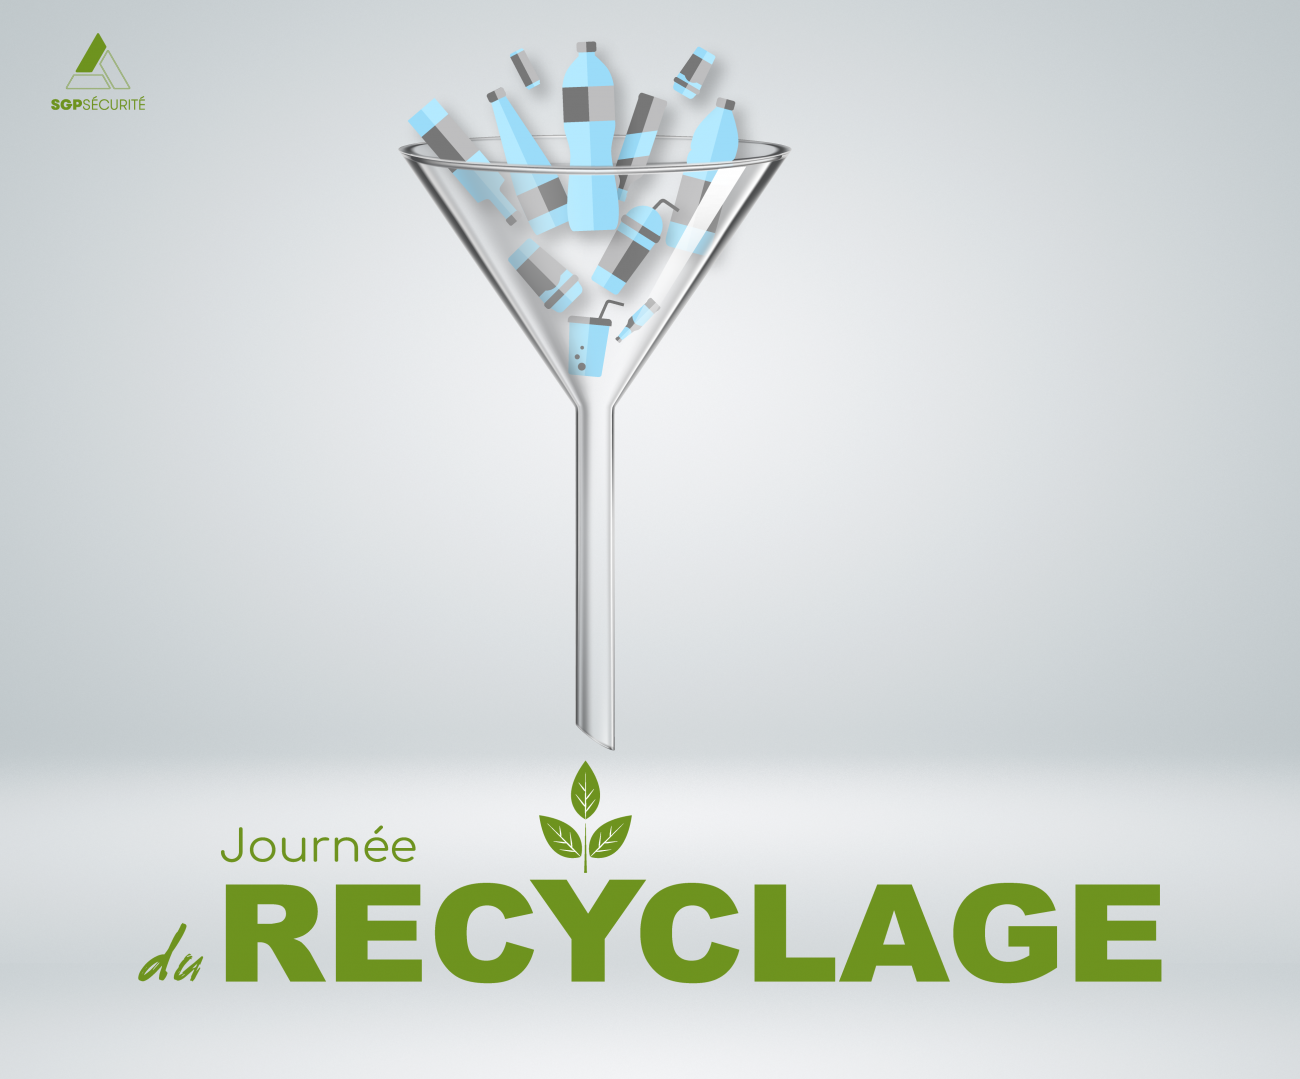 Groupe Sgp Dates Commemoratives Journée Du Recyclage Plan De Travail 1 05 03